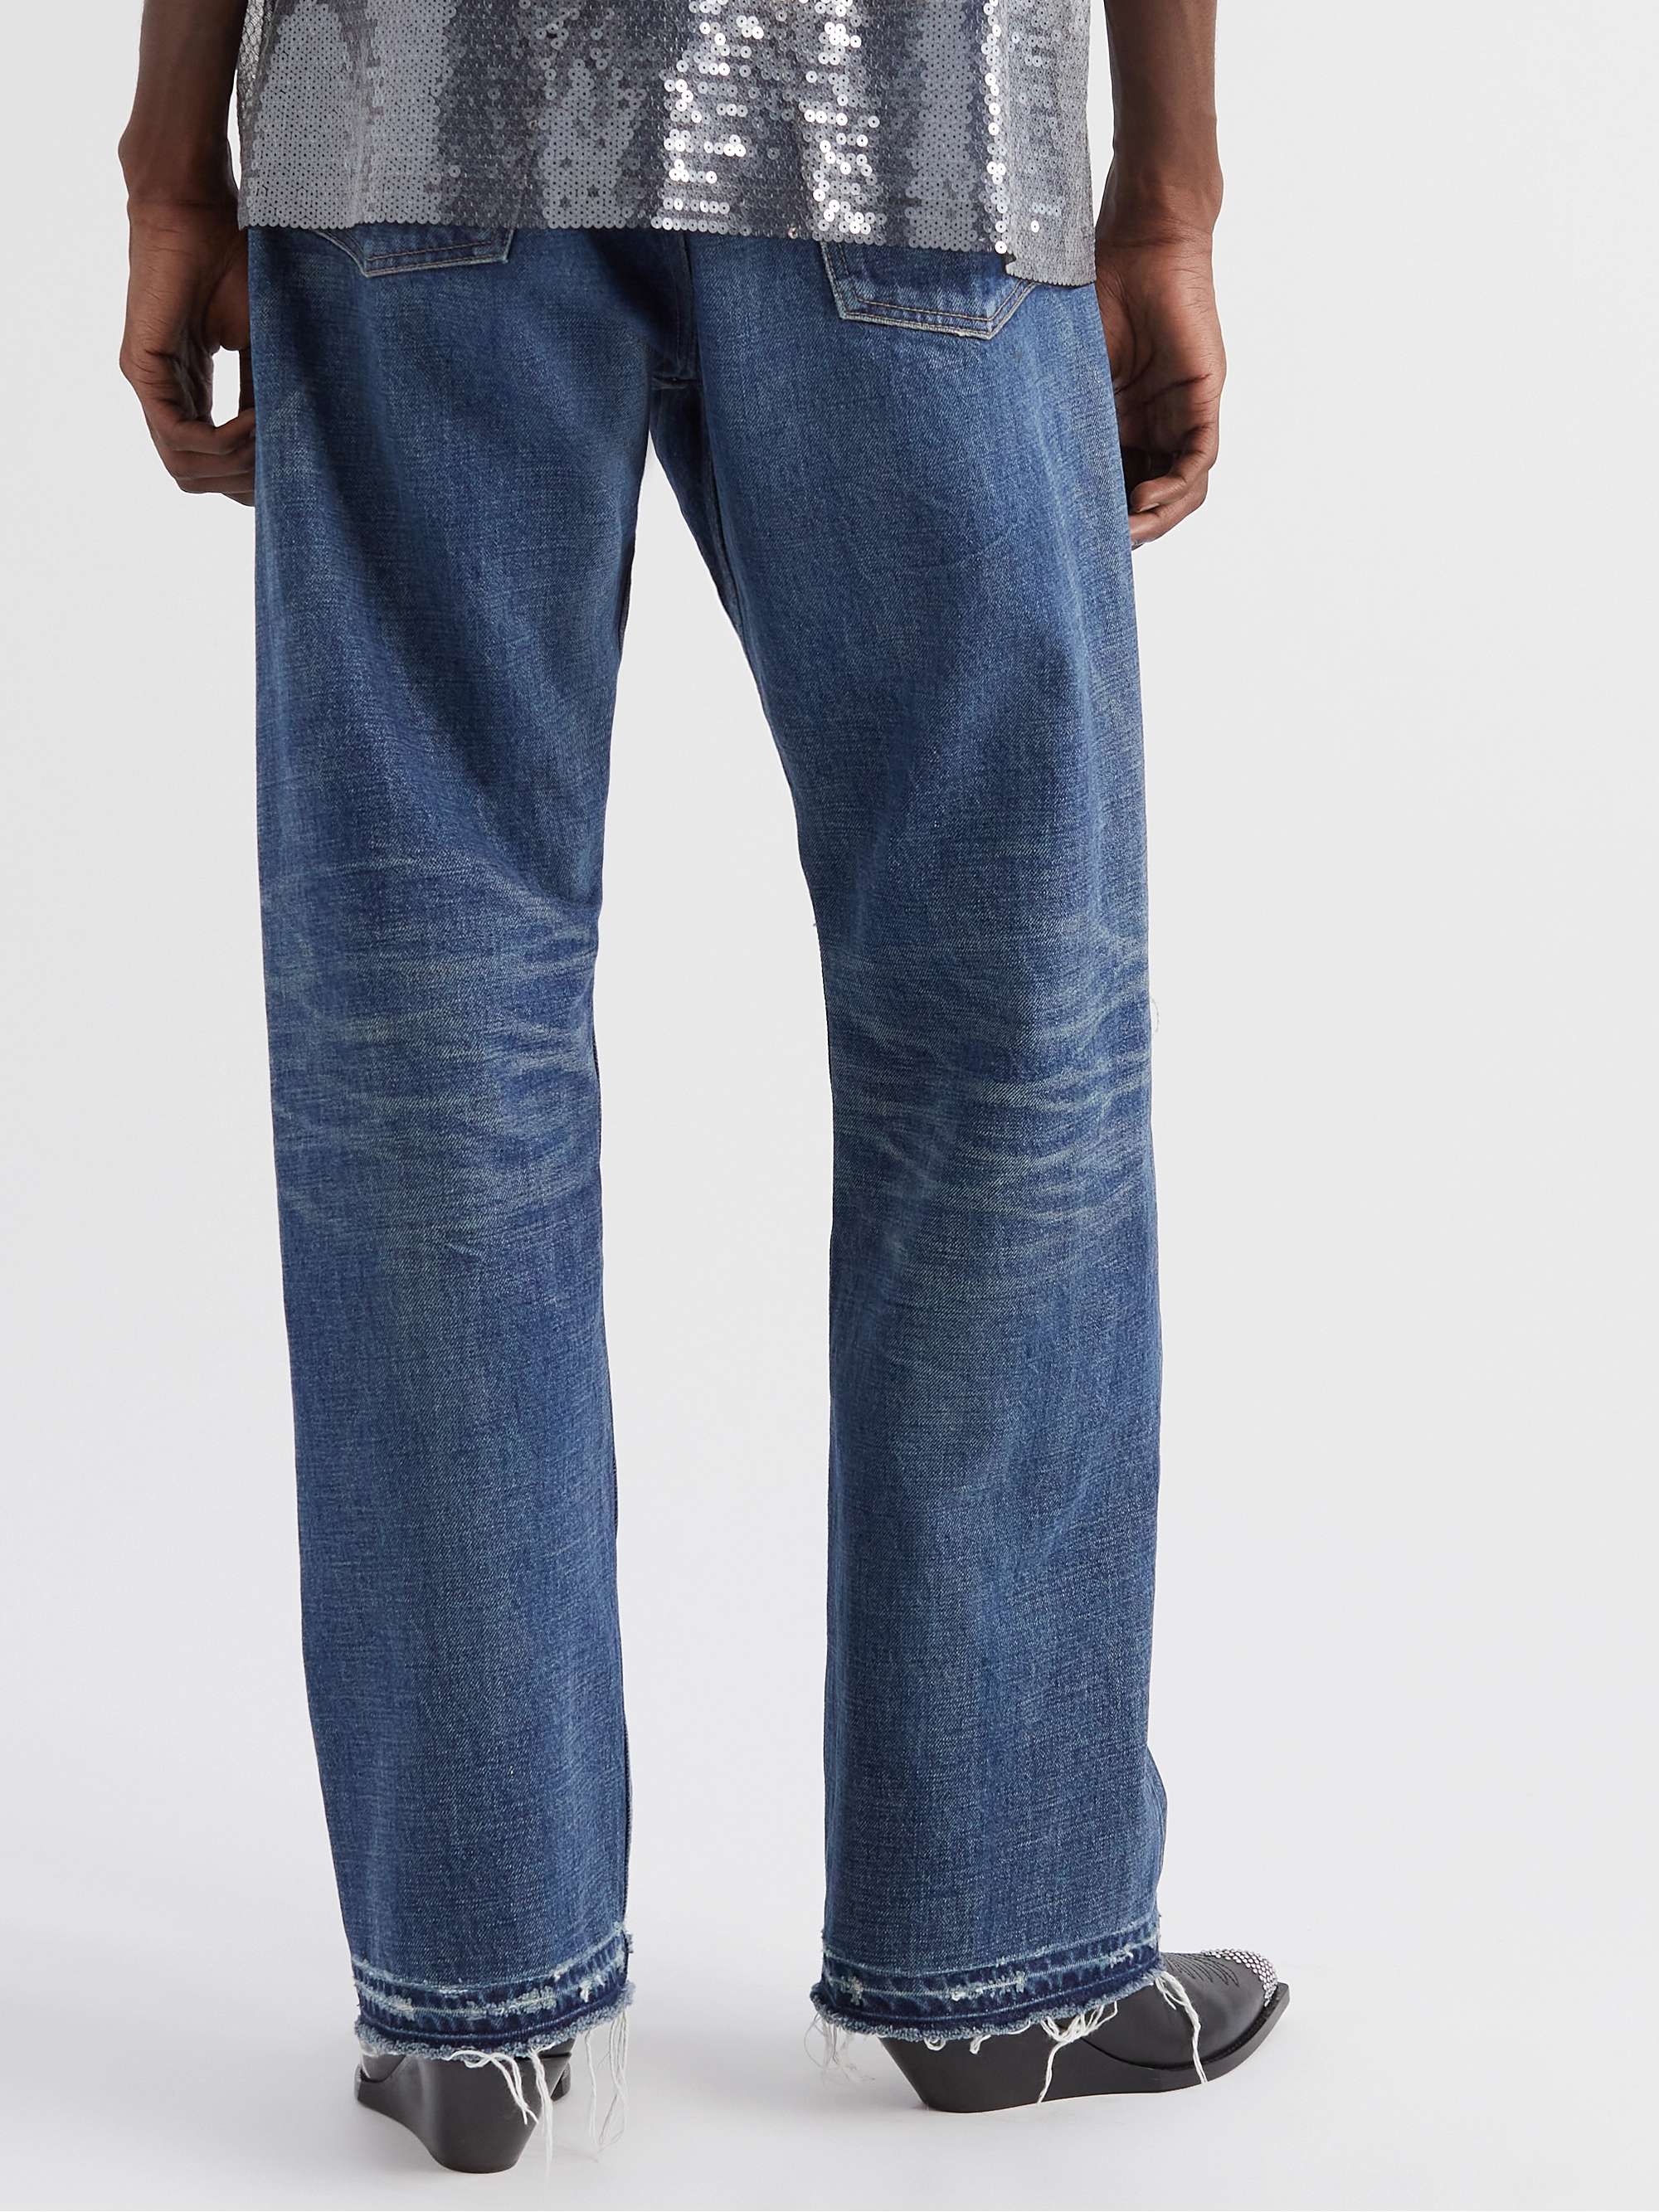 CELINE HOMME Wesley Straight-Leg Distressed Jeans | MR PORTER